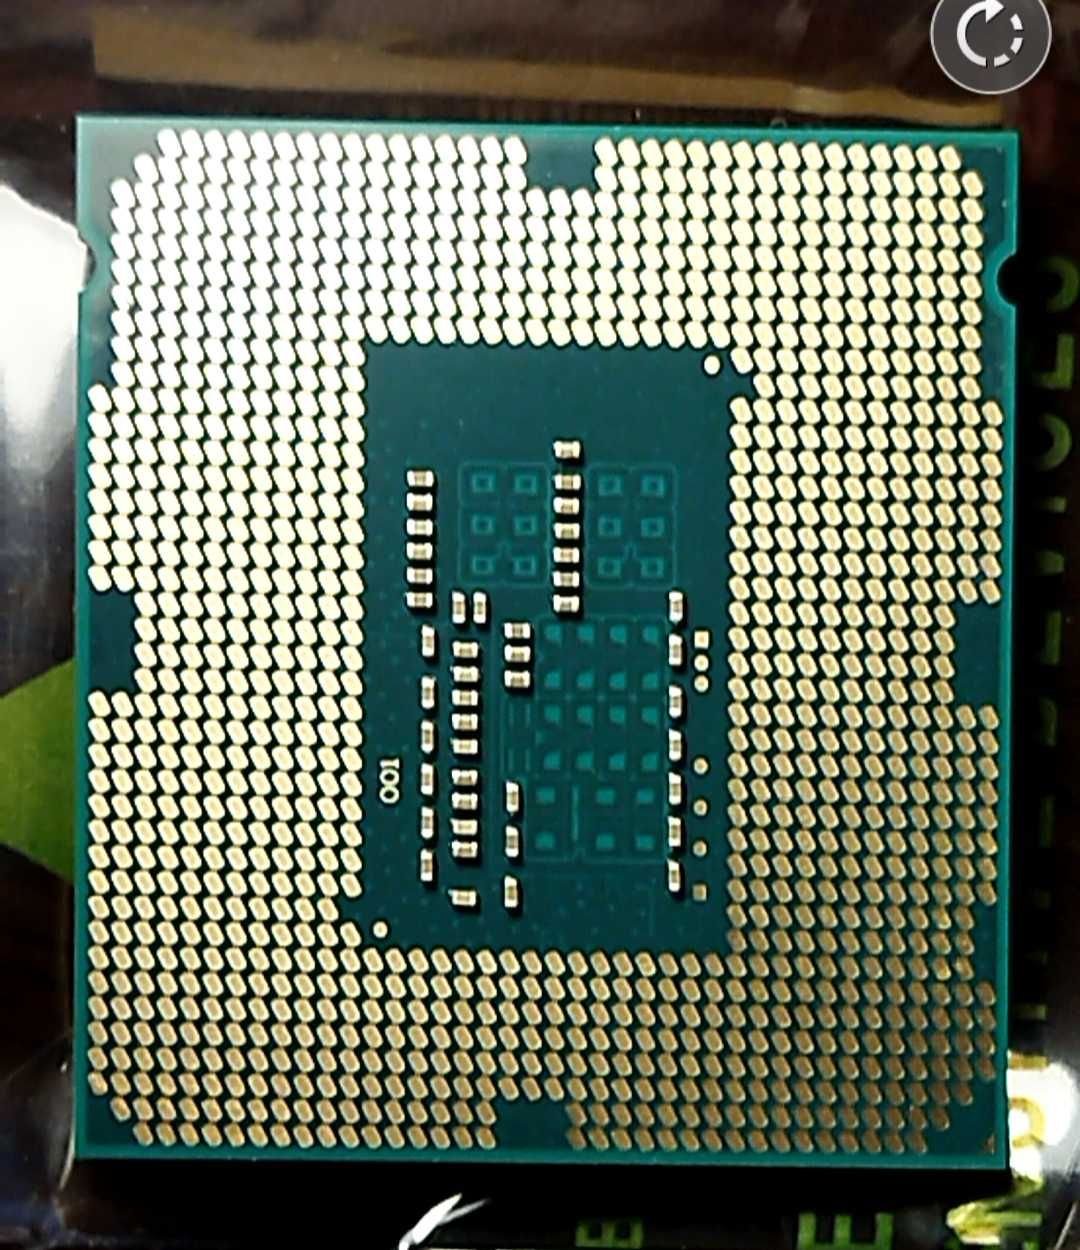 Процессор Intel Core I3-4130 socket 1150